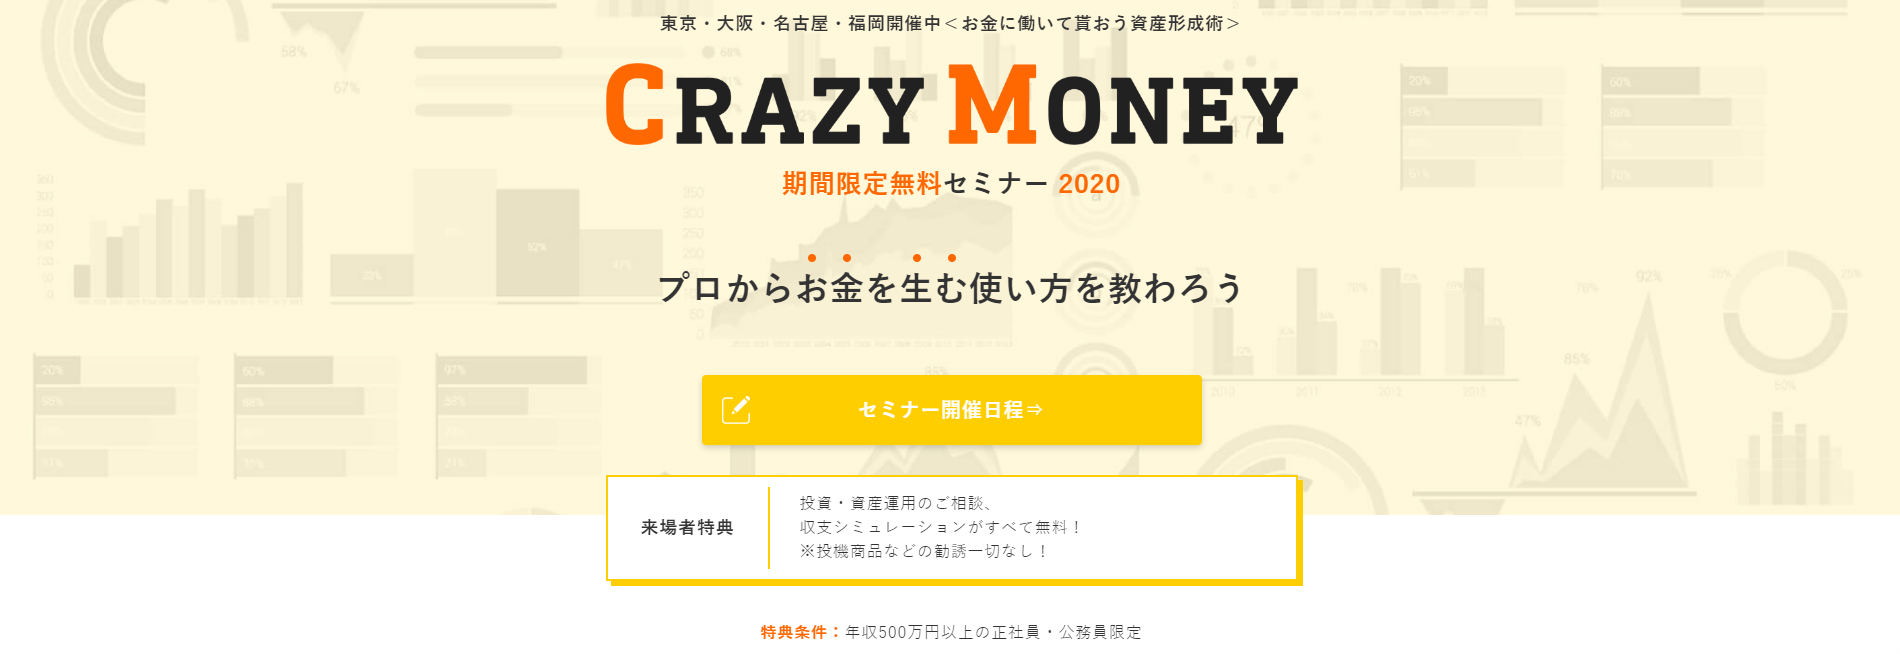 crazy money